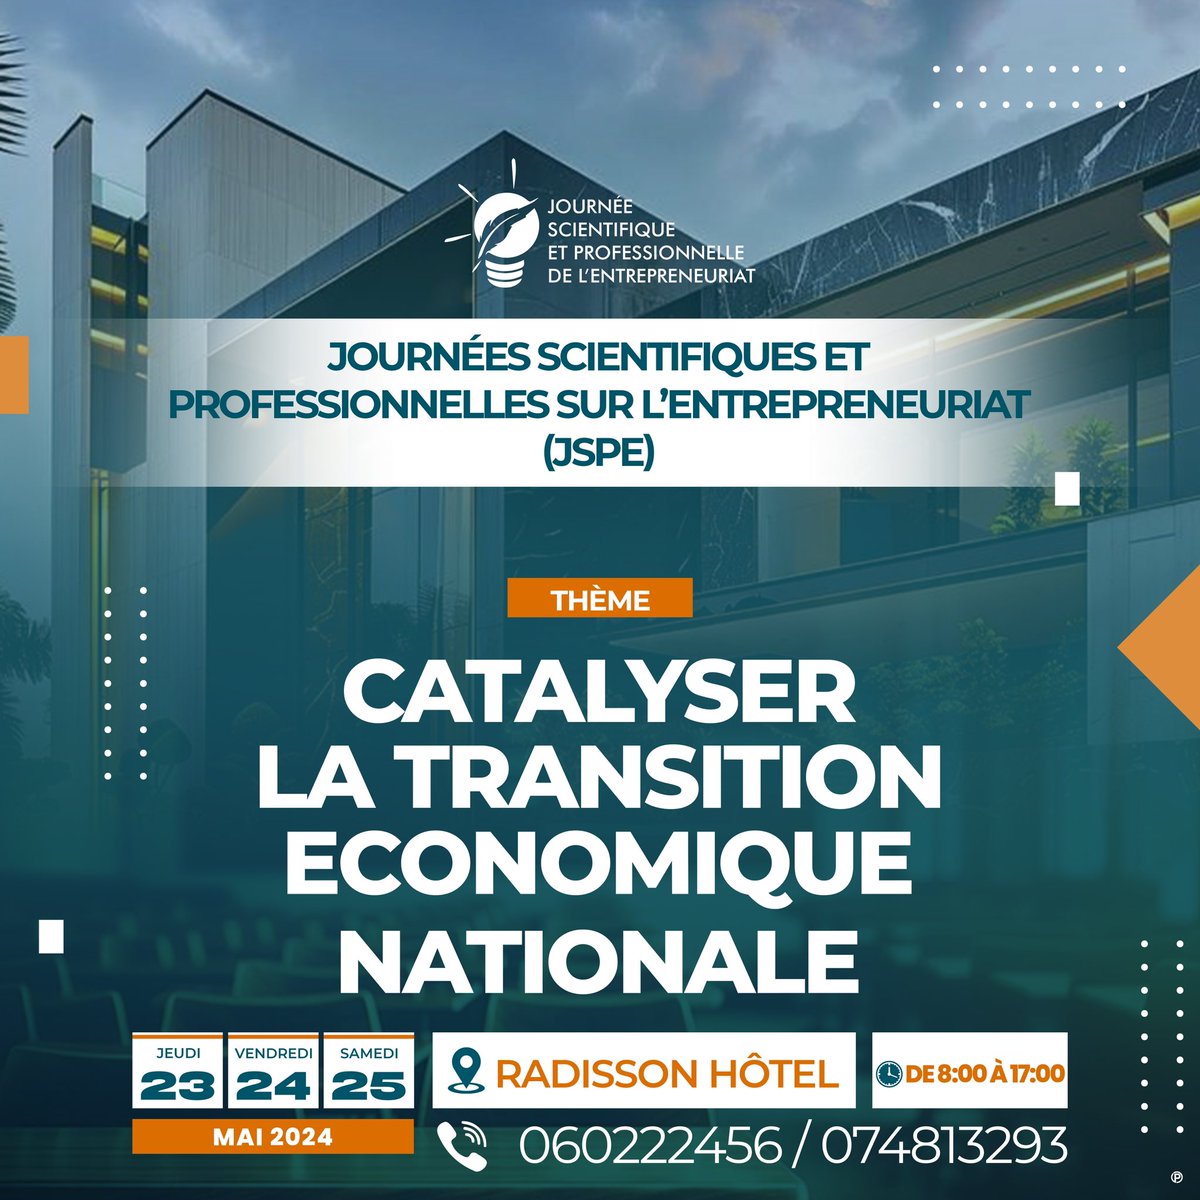 Journées Scientifiques et Professionnelles sur l’Entrepreneuriat. 📅 Du 23 au 25 Mai 2024.
🇬🇦 Gabon - Libreville.
Thème : Catalyser la transition économique nationale.

#JSPE2024
#Entrepreneurship 
#Femmeleader
#Innovationchallenge